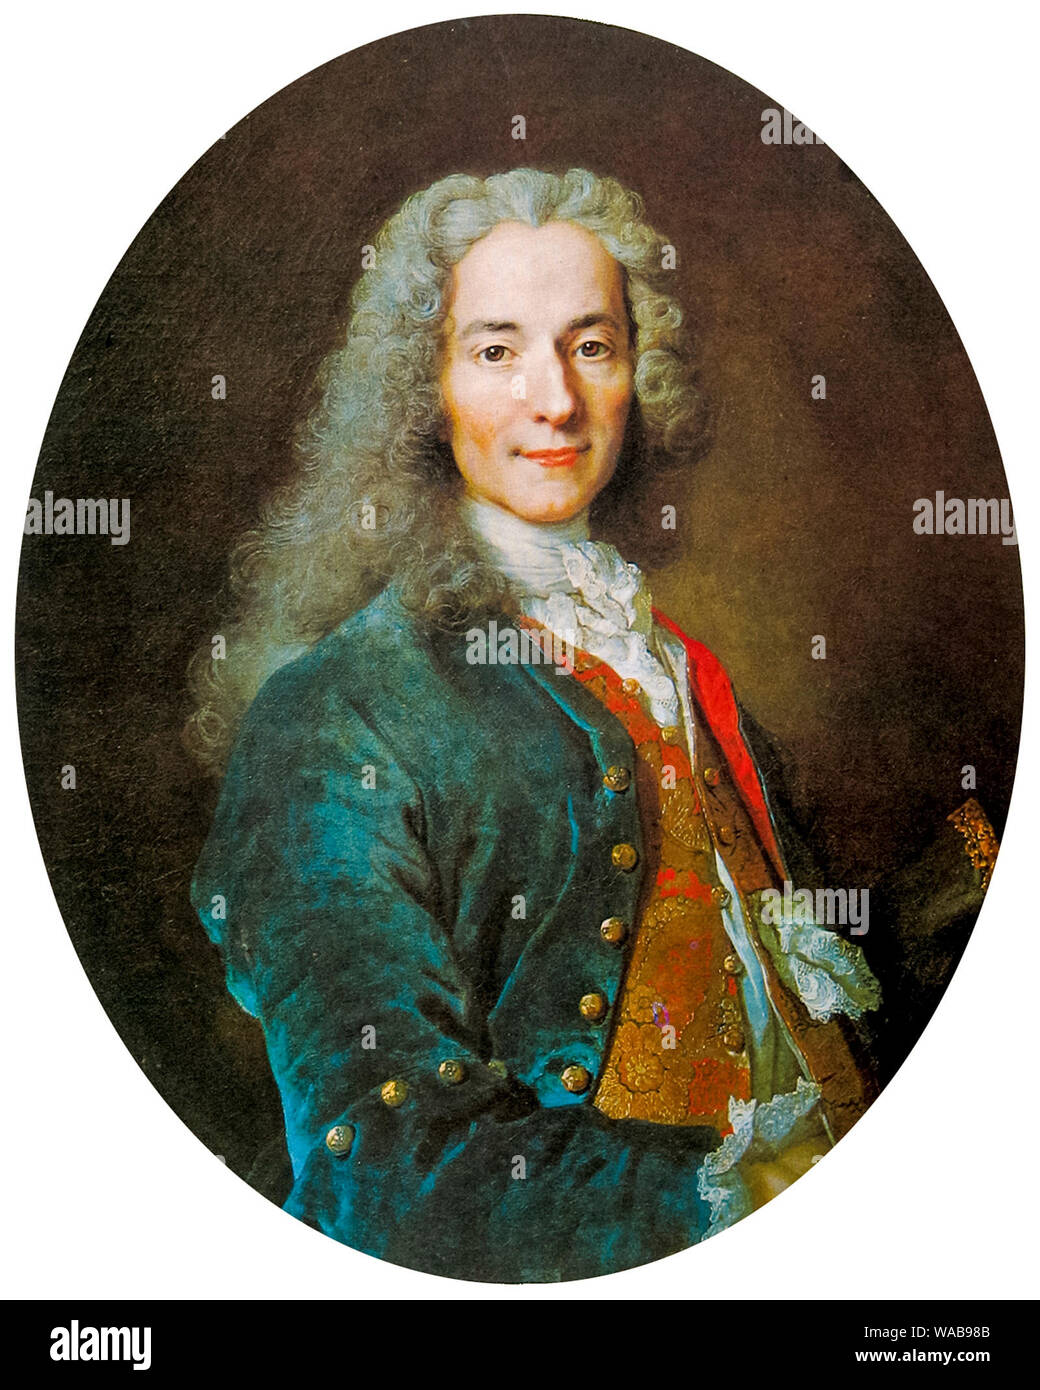 Voltaire, (François-Marie Arouet), 1694-1778, portrait painting by Nicolas de Largilliere, circa 1724 Stock Photo